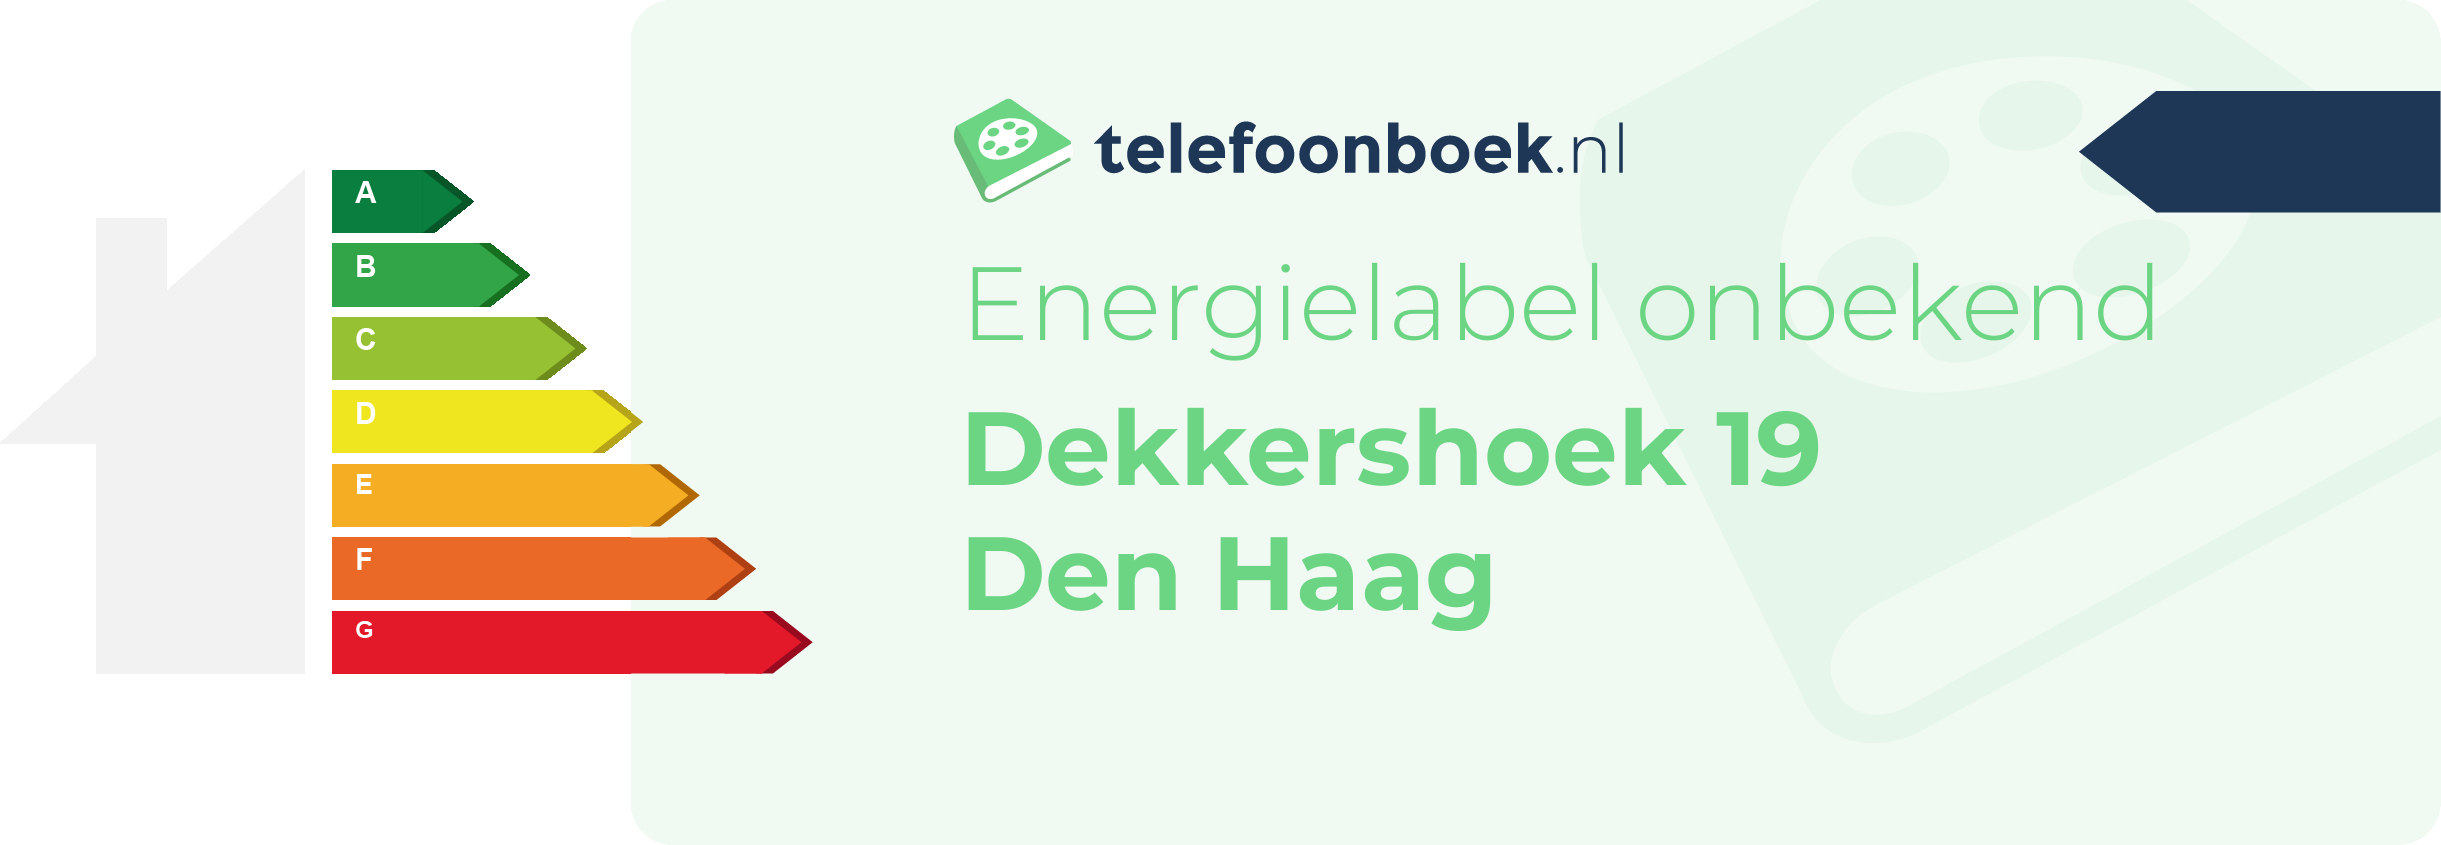 Energielabel Dekkershoek 19 Den Haag